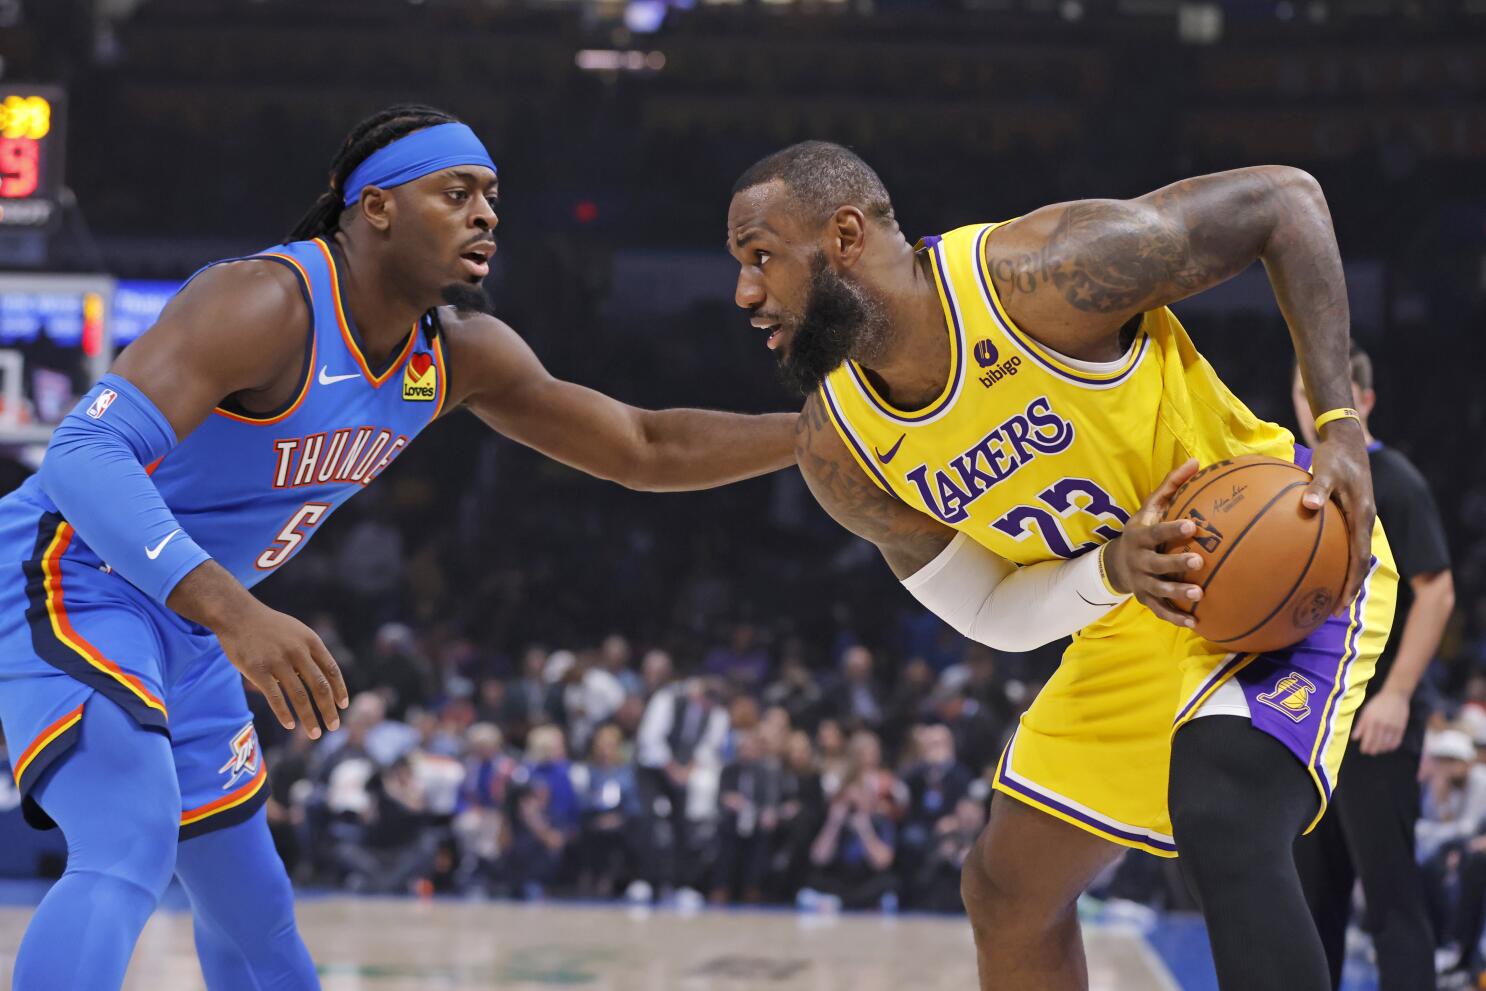 NBA AO VIVO - LOS ANGELES LAKERS x OKC THUNDER l Lebron James vs